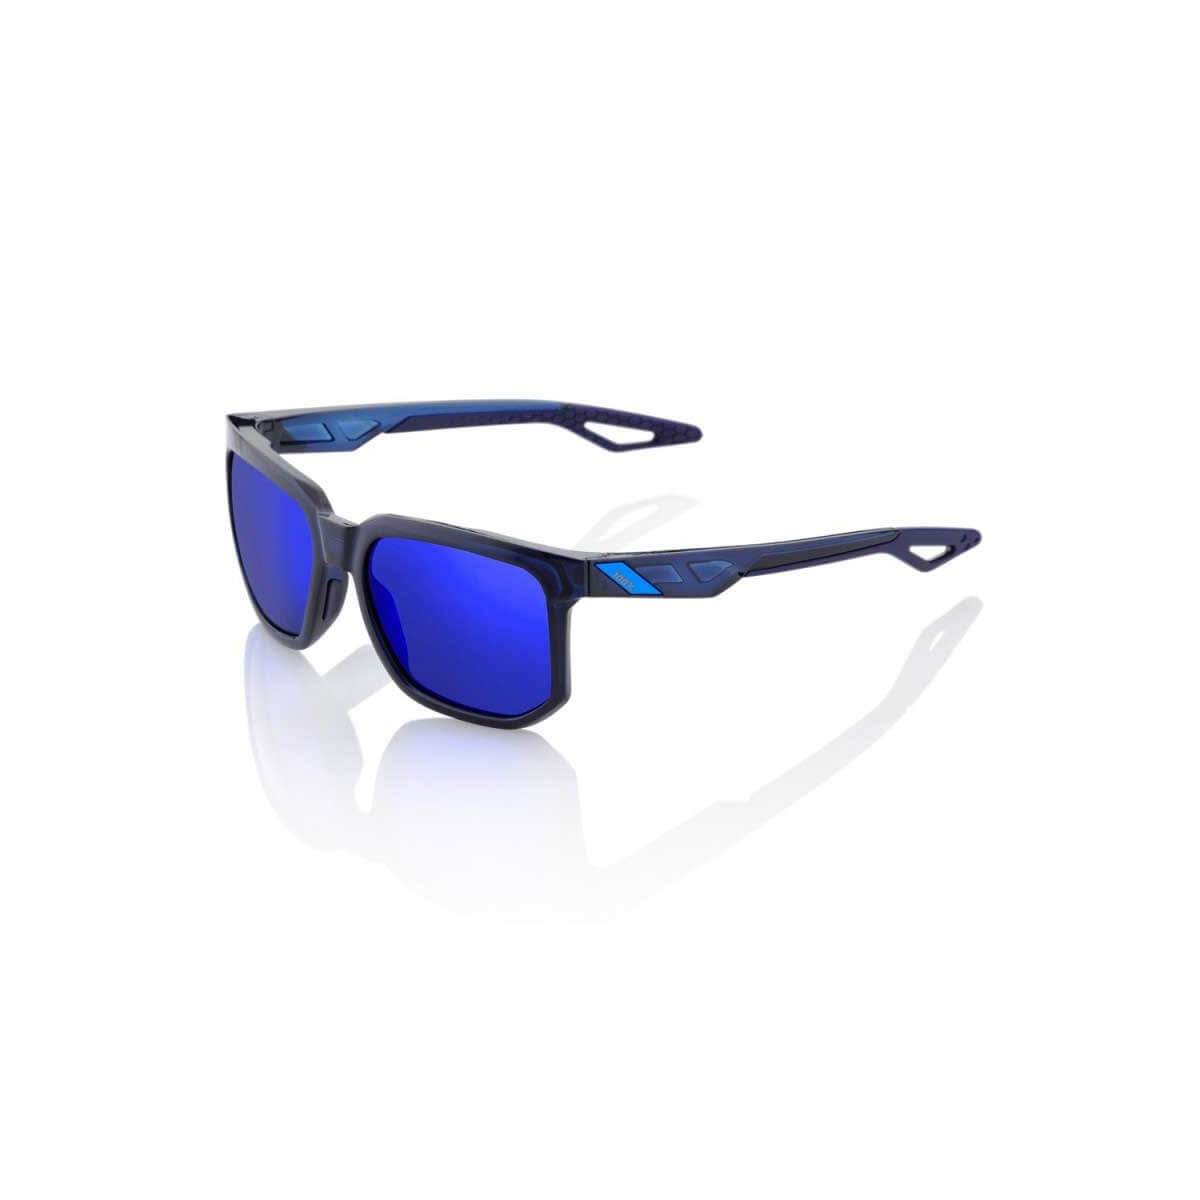 Image of 100% zentrische durchscheinende blaue Brille mit elektrischer blauer Spiegellinse